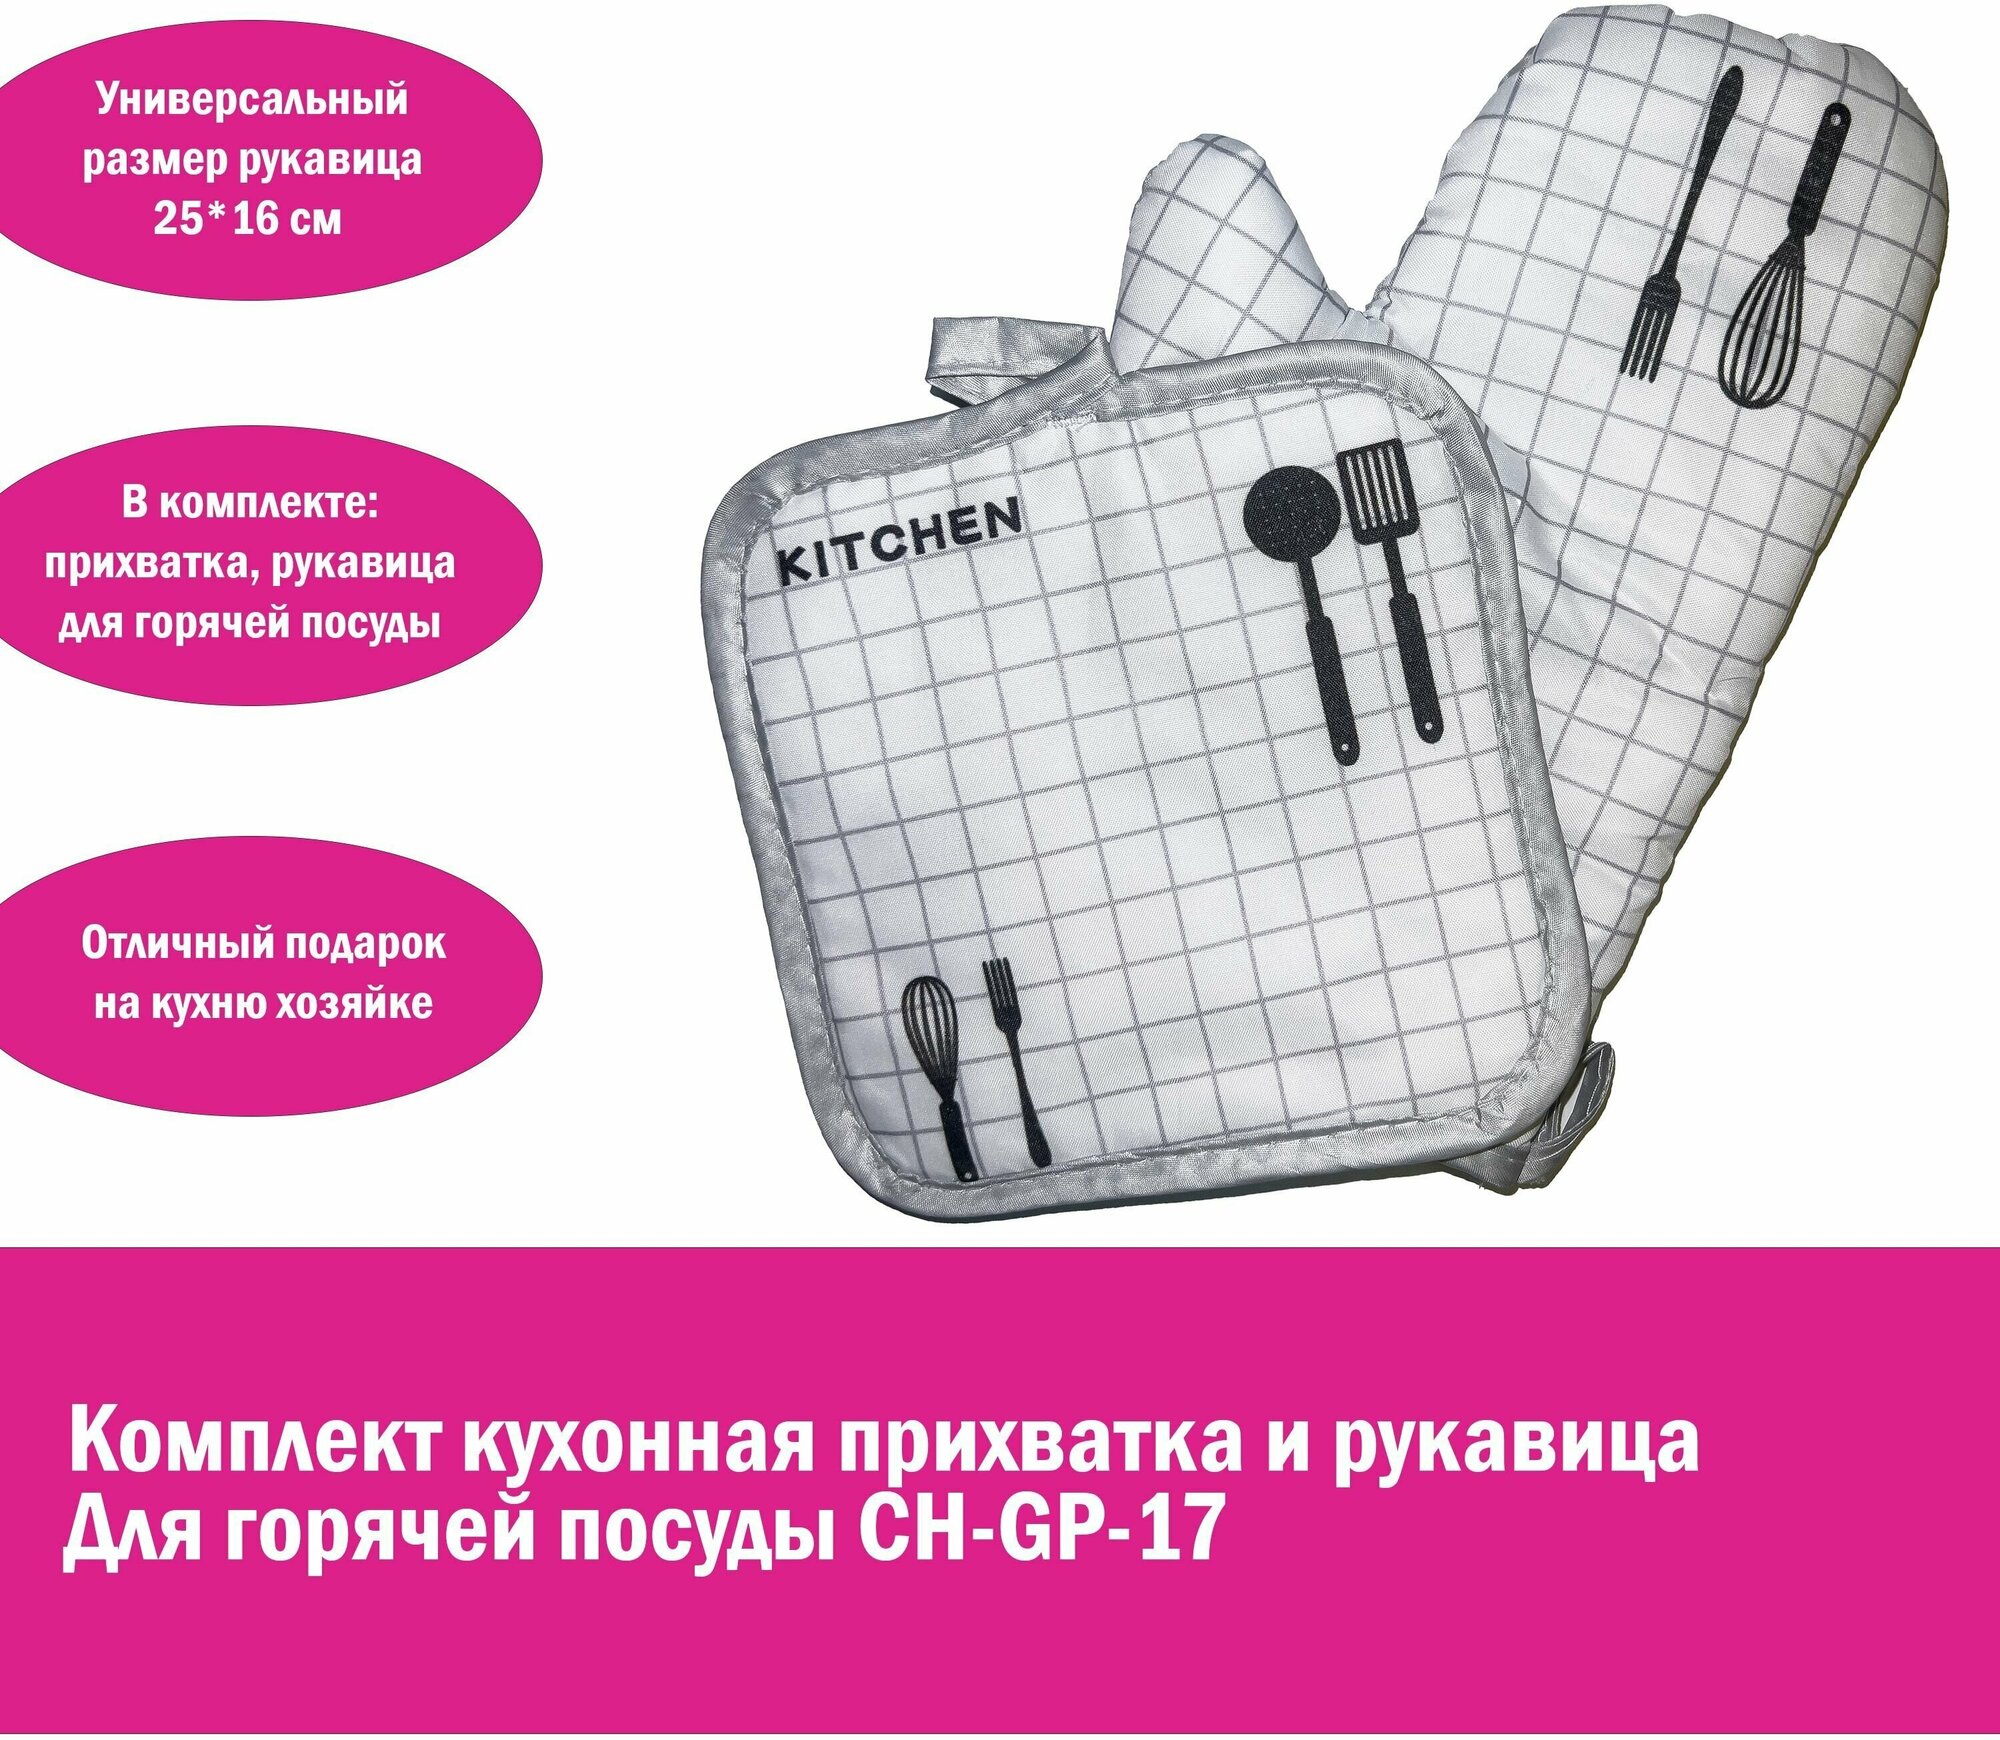 Комплект для кухни прихватка и рукавица для горячей посуды CH-GP-17